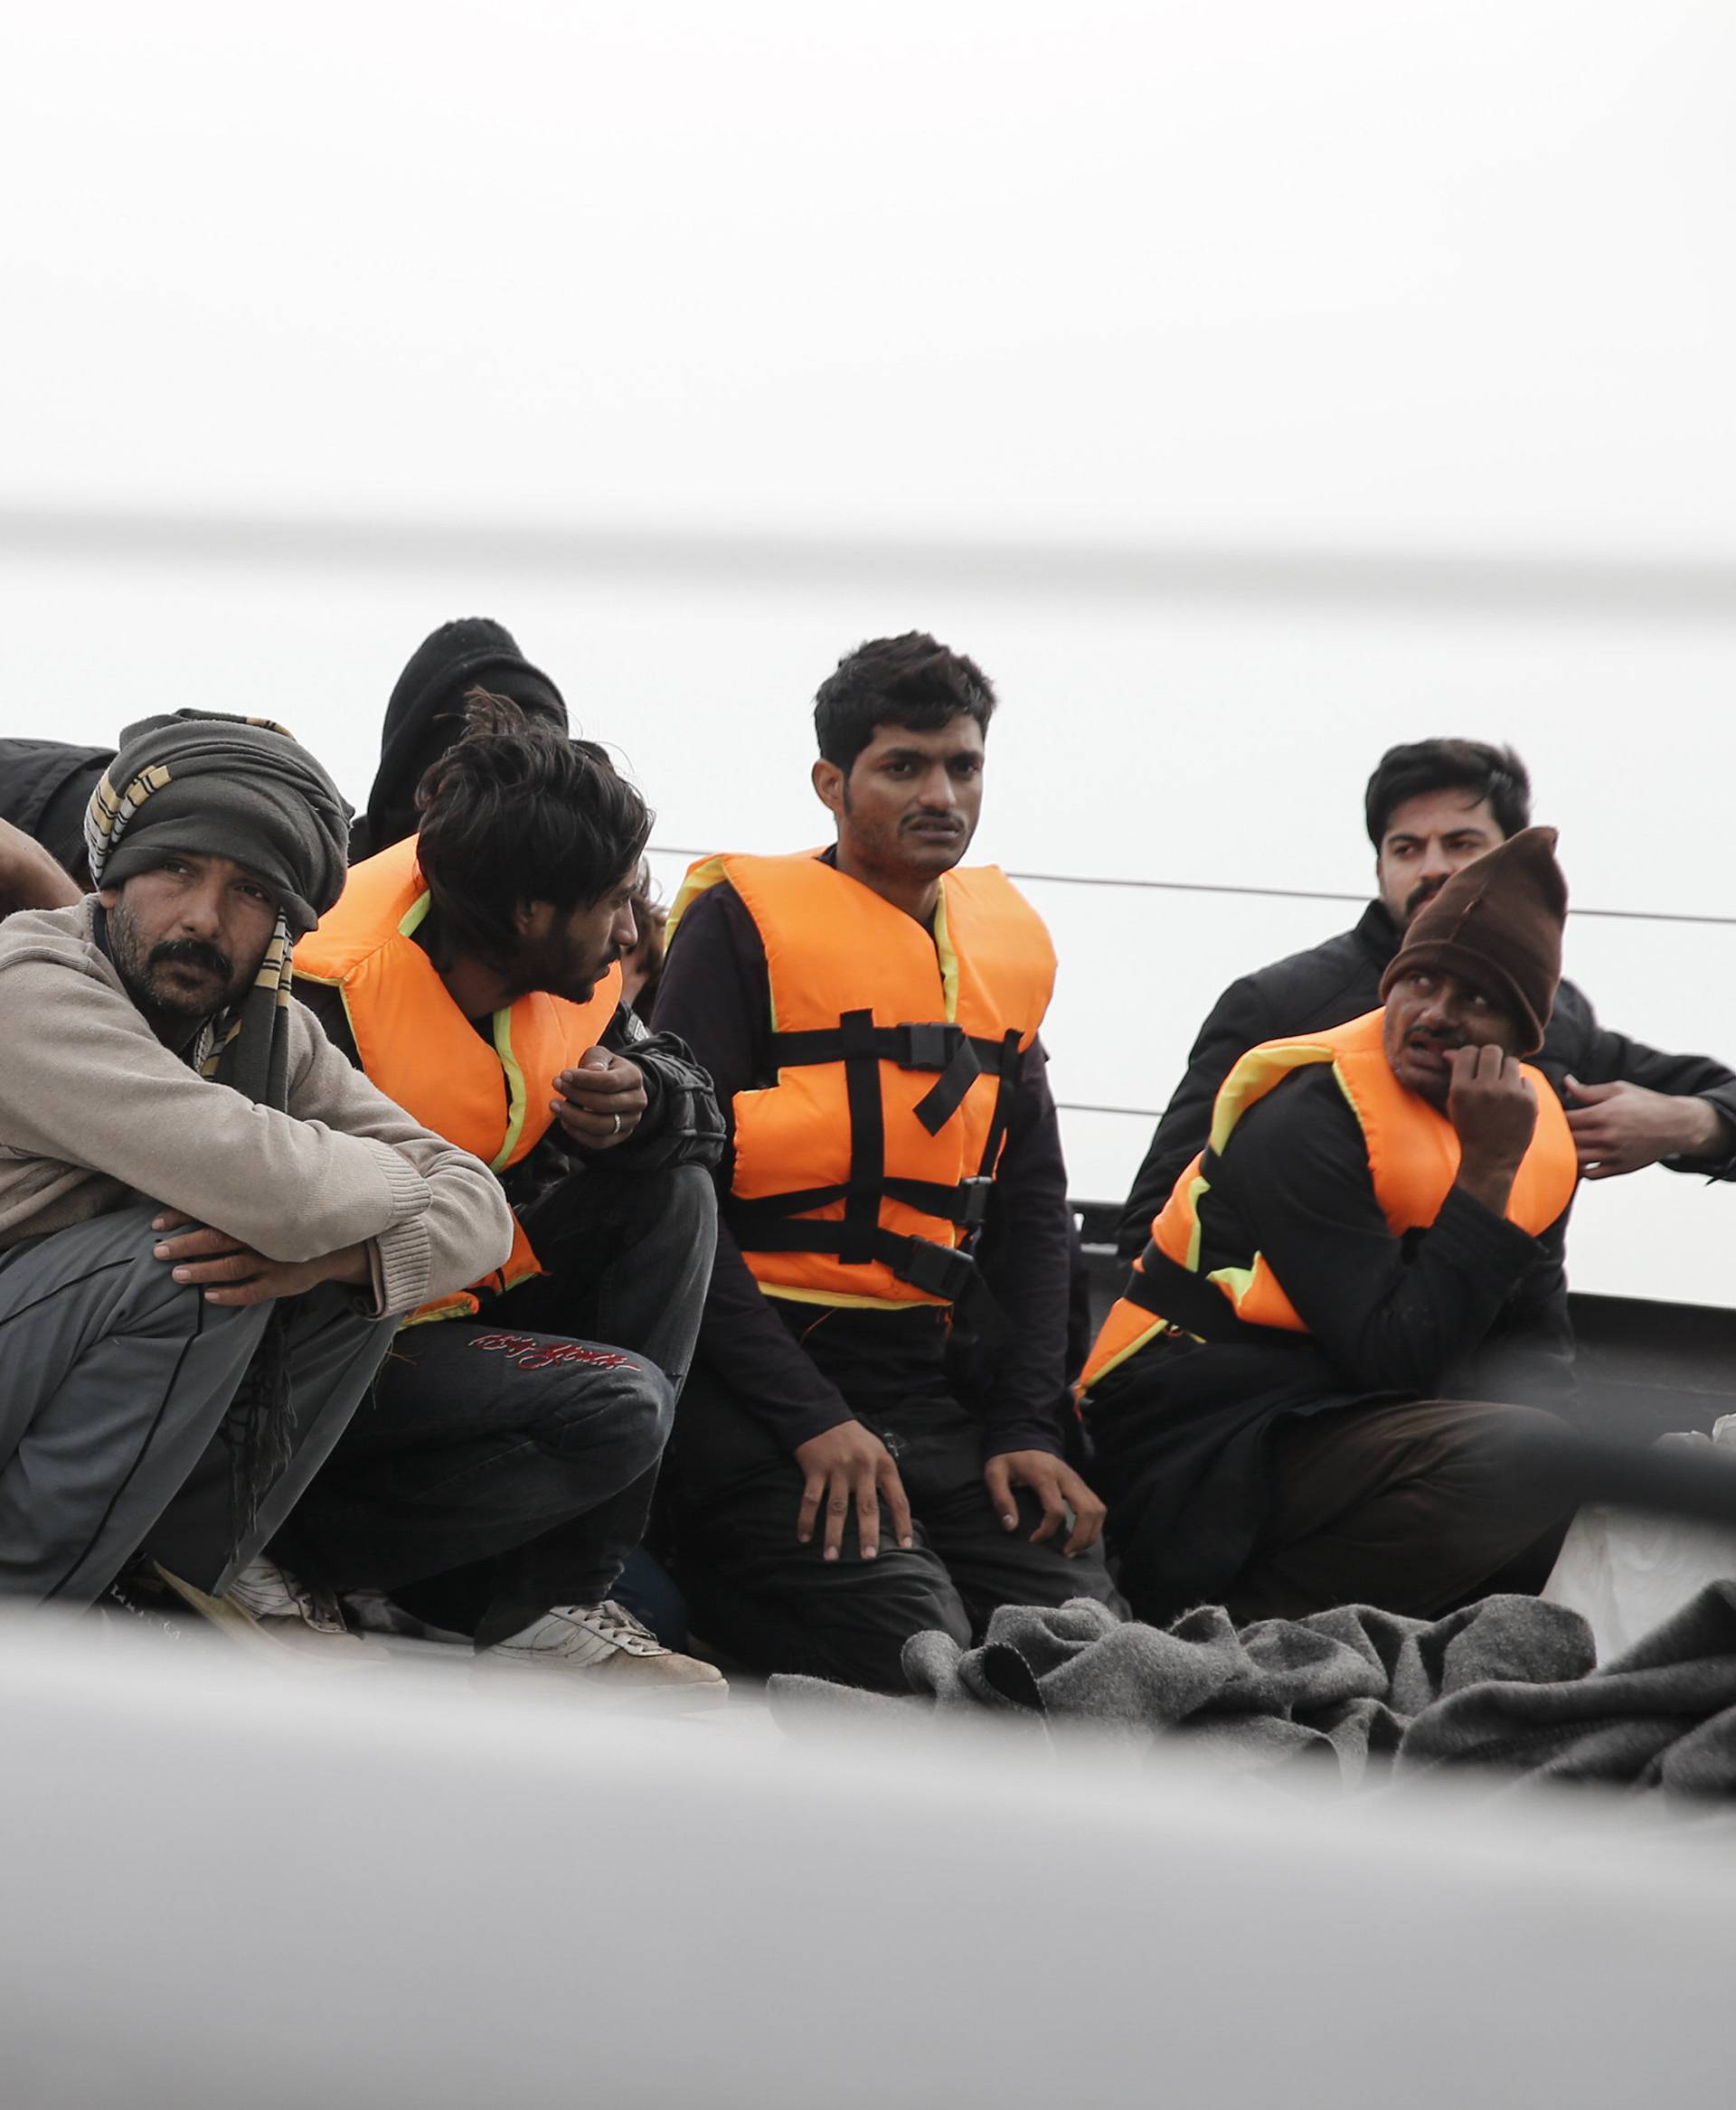 Ispred grčkog otoka Lezbosa uhićeno je 127 migranata